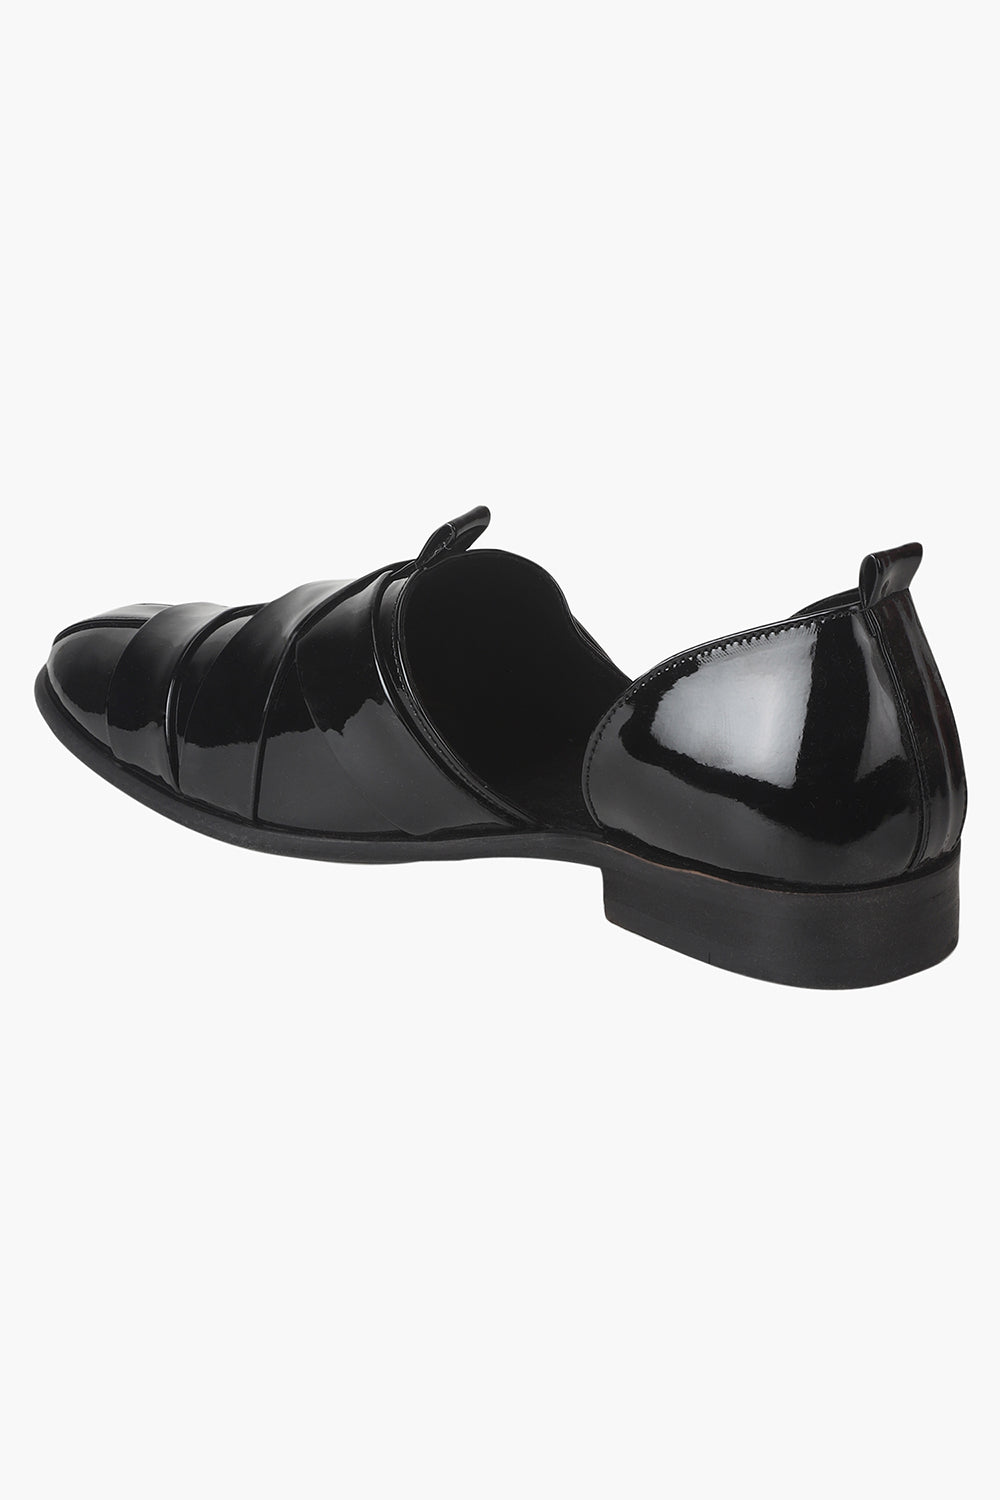 Womens Dress Slipper | Slip On Shoes in Black Patent | Grenson